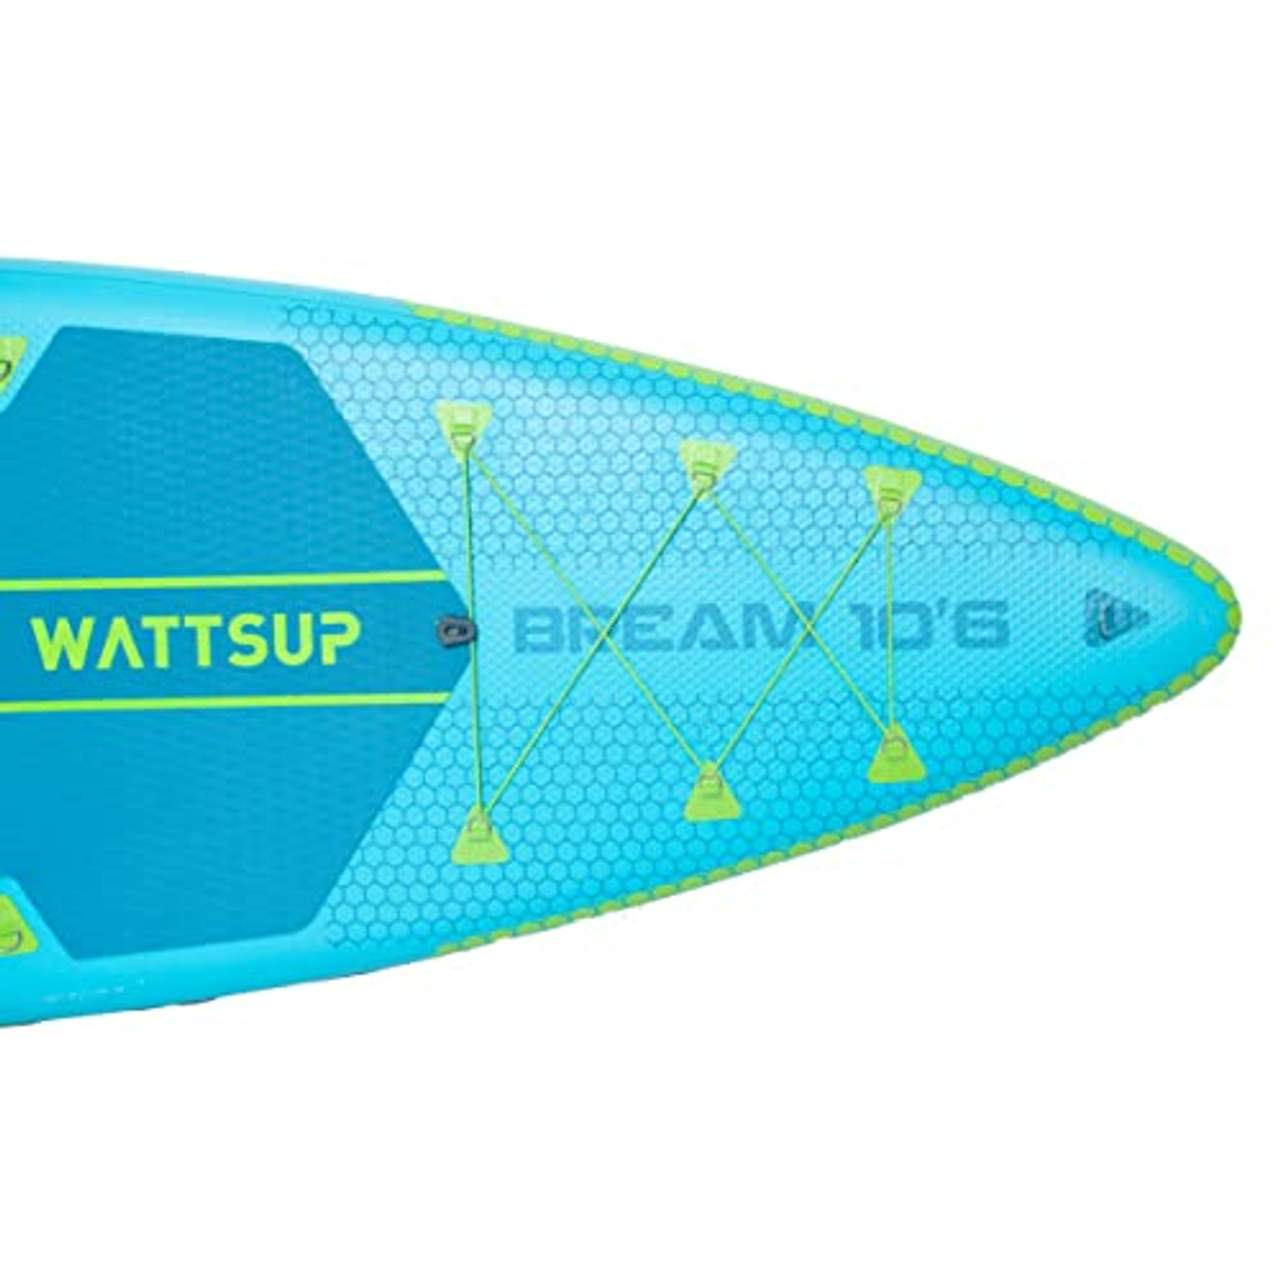 Wattsup PB -WBRM106K SUP WATTSUP